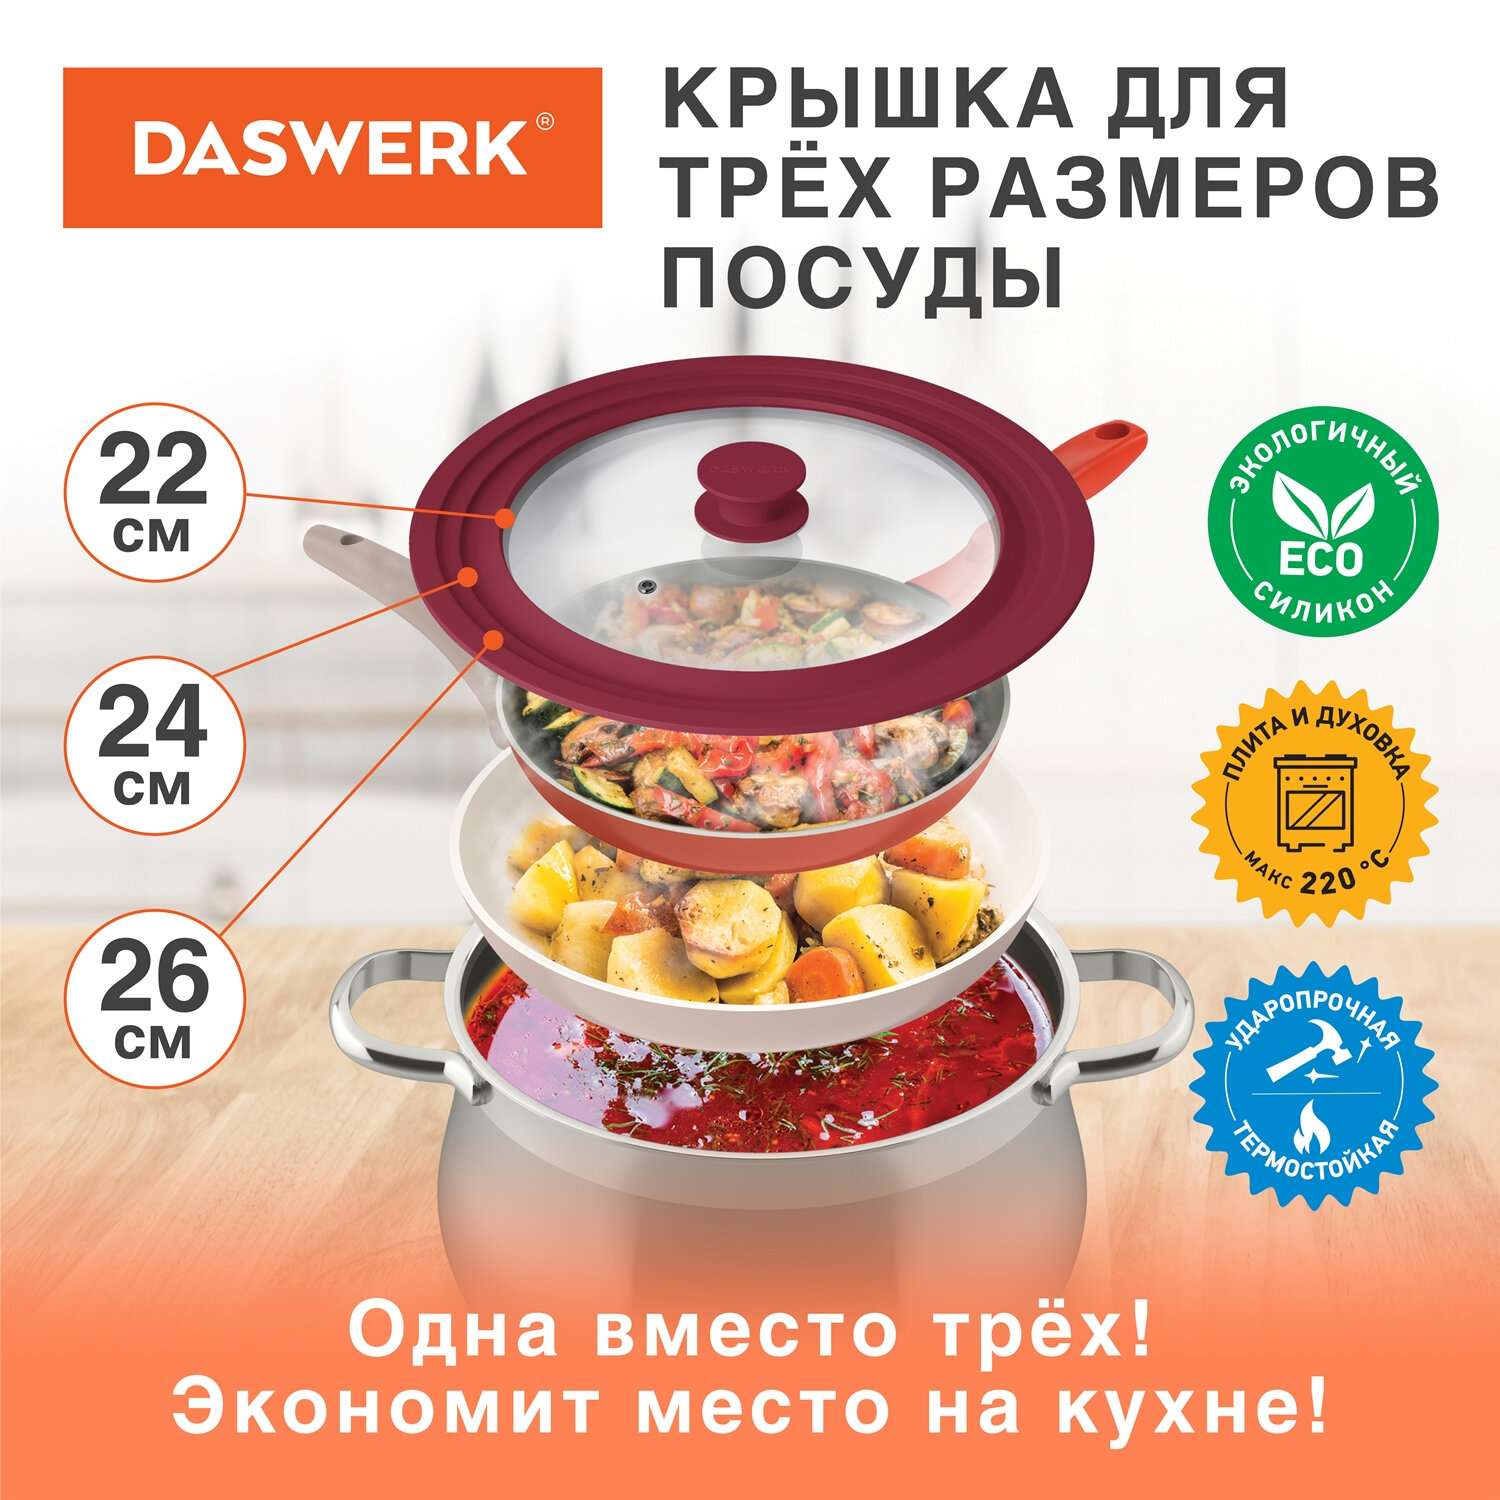 Крышка для сковороды DASWERK кастрюли посуды универсальная 3 размера 22-24-26см - фото 2